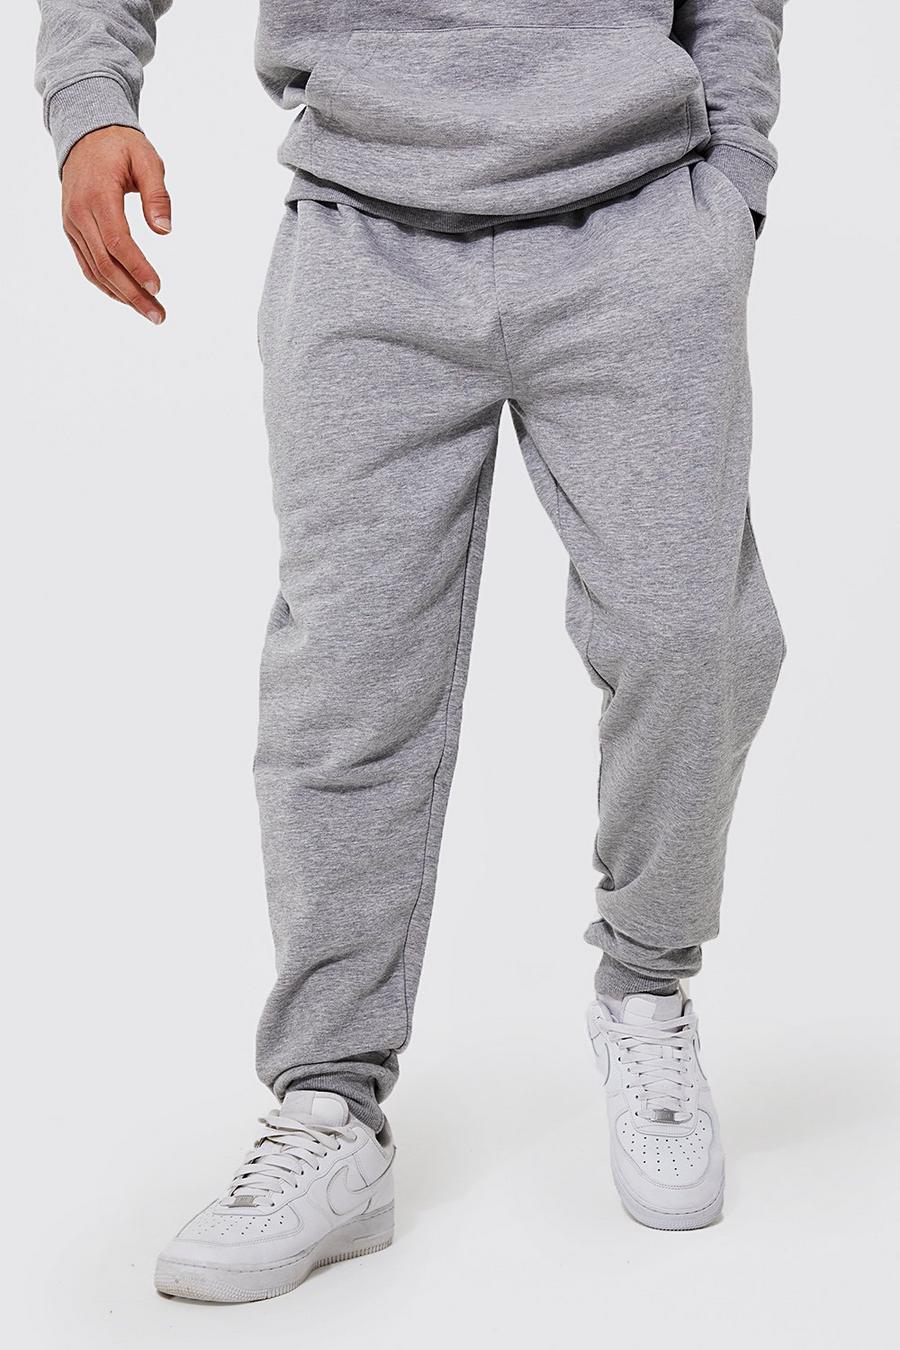 Grey מכנסי ריצה בגזרה רגילה מבד משולב בכותנת REEL